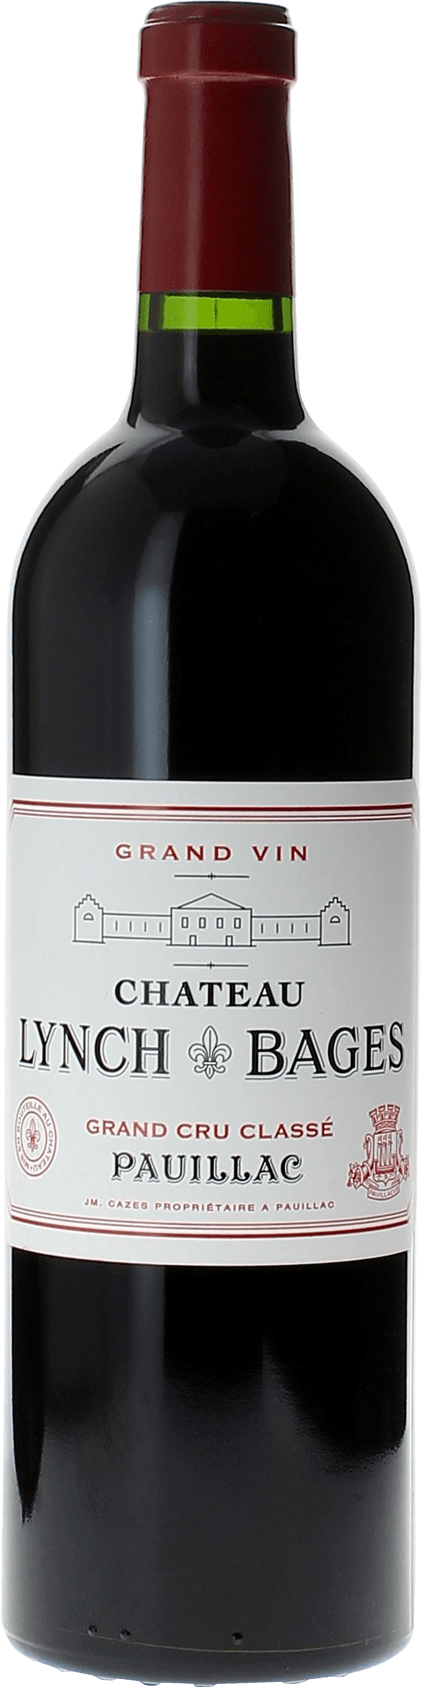 Lynch bages 1997  Pauillac, Bordeaux rouge